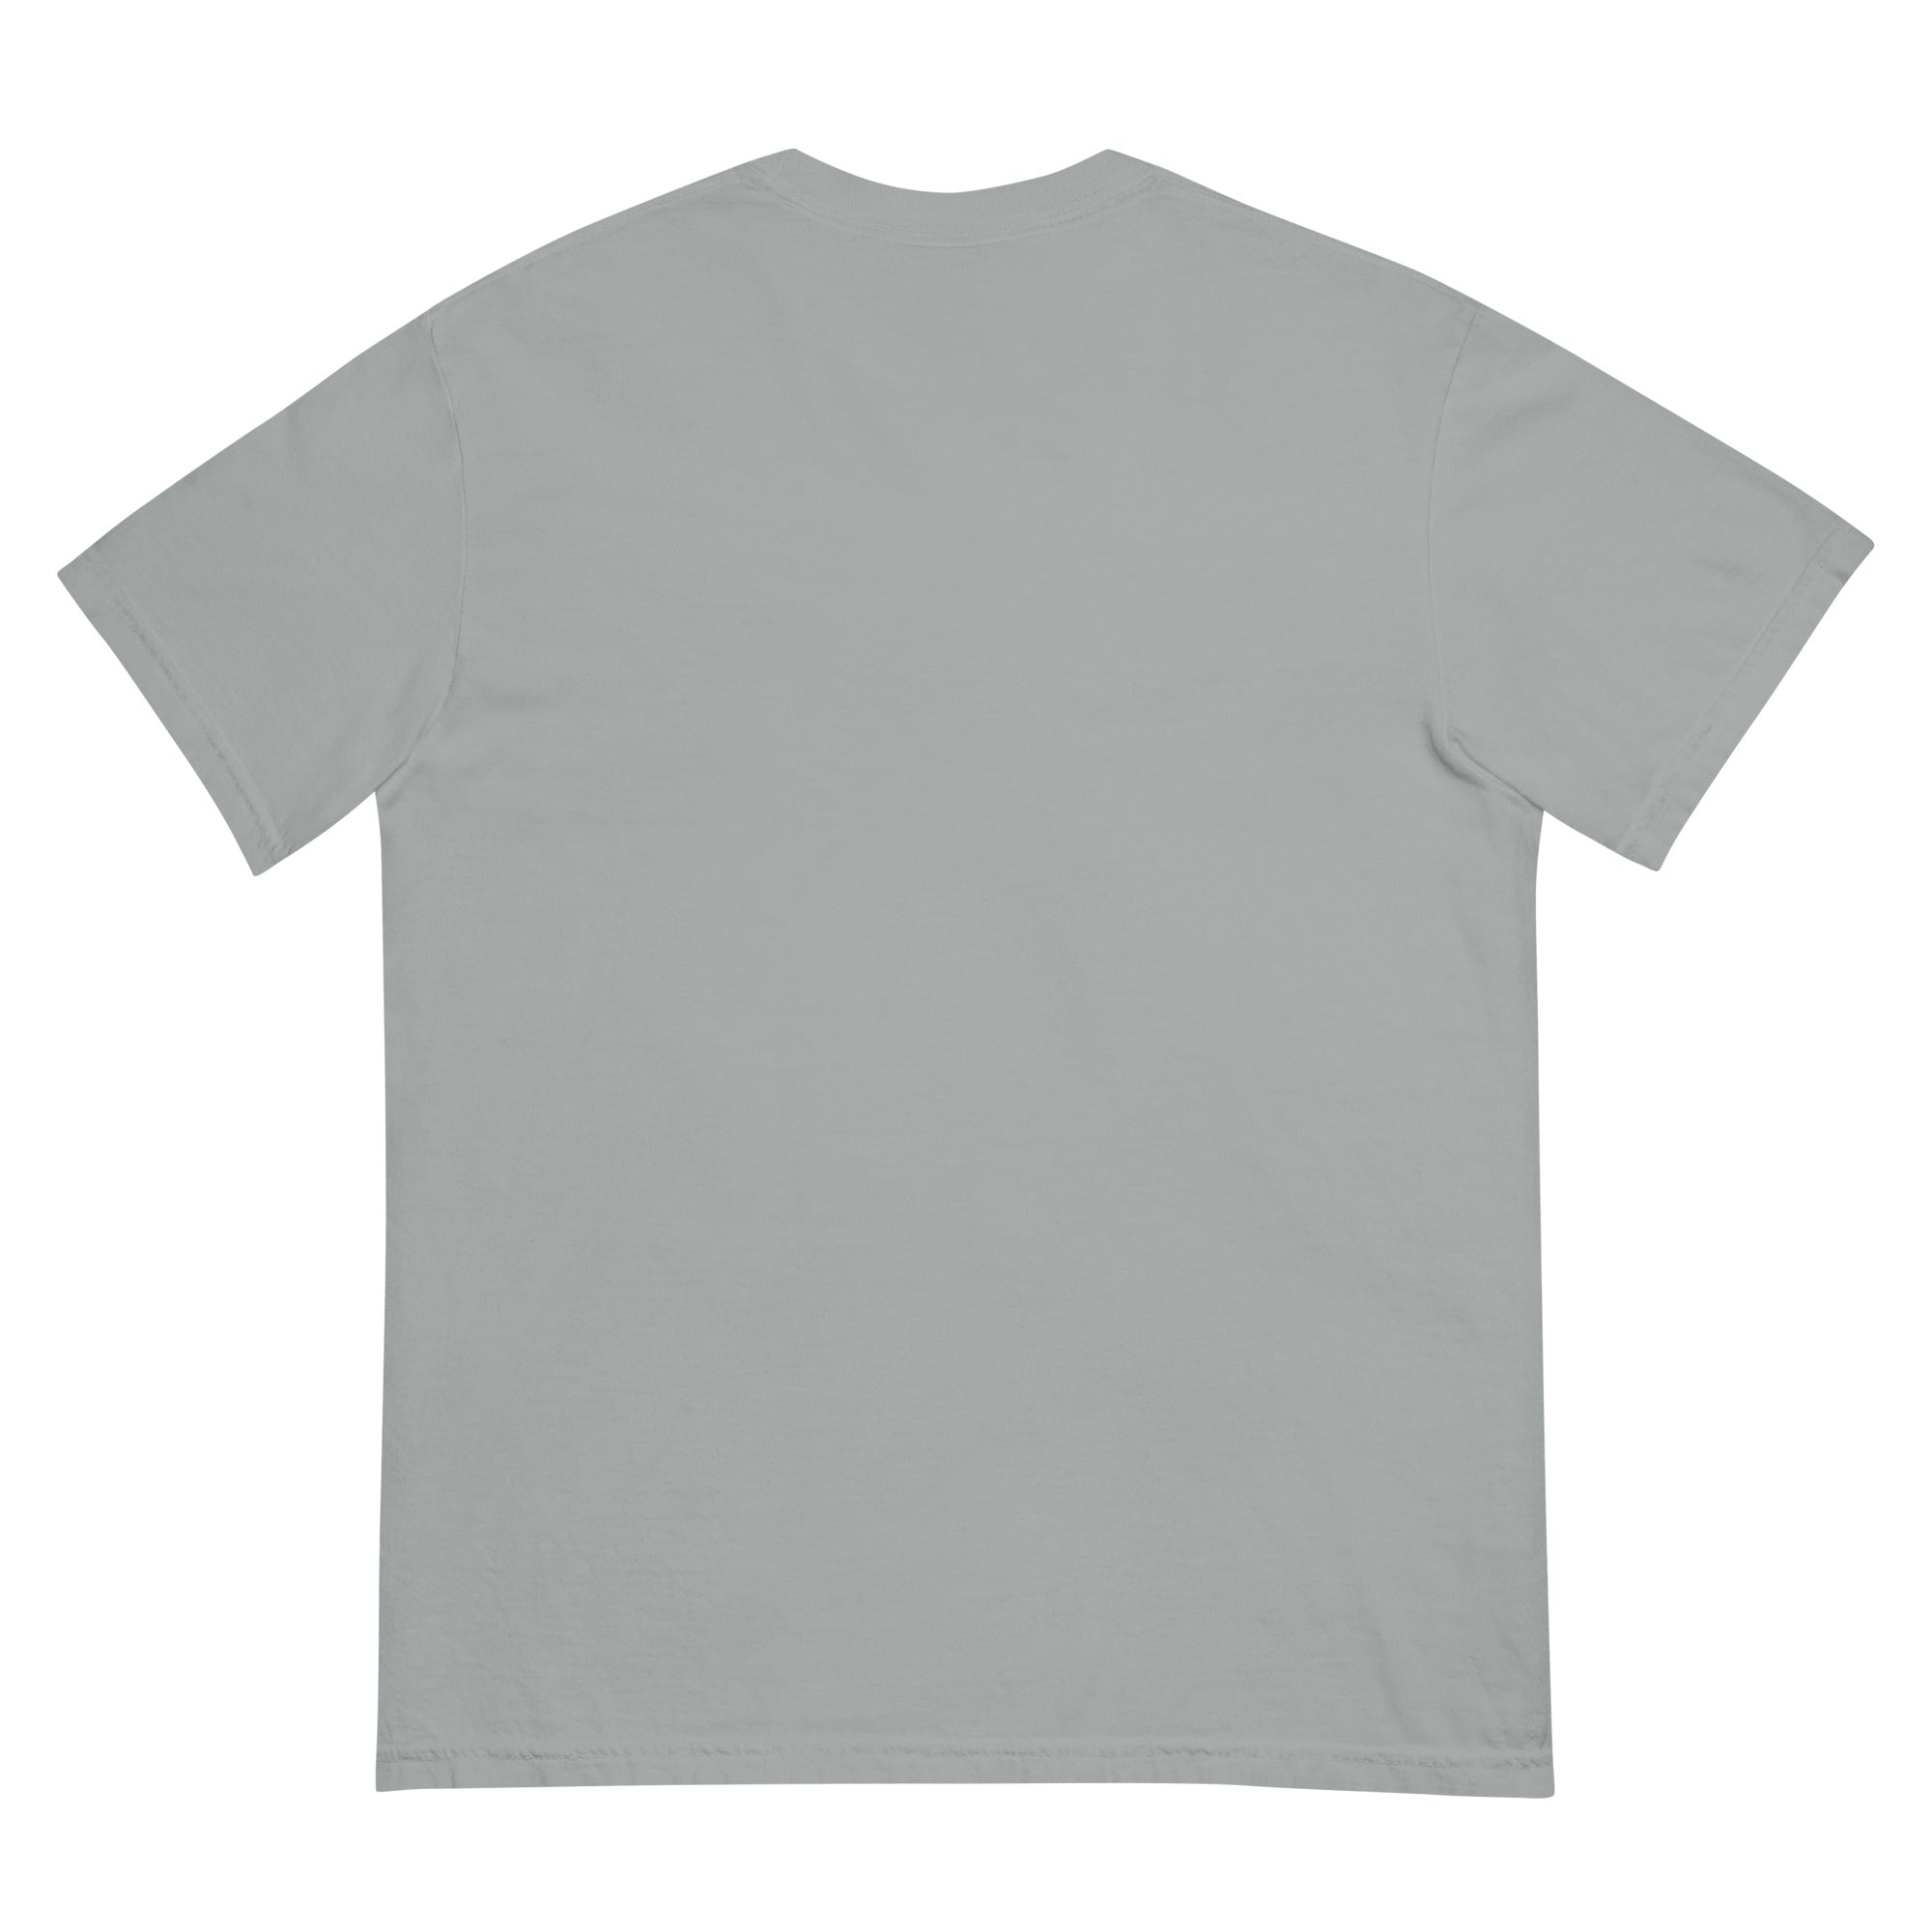 Garment-dyed heavyweight t-shirt